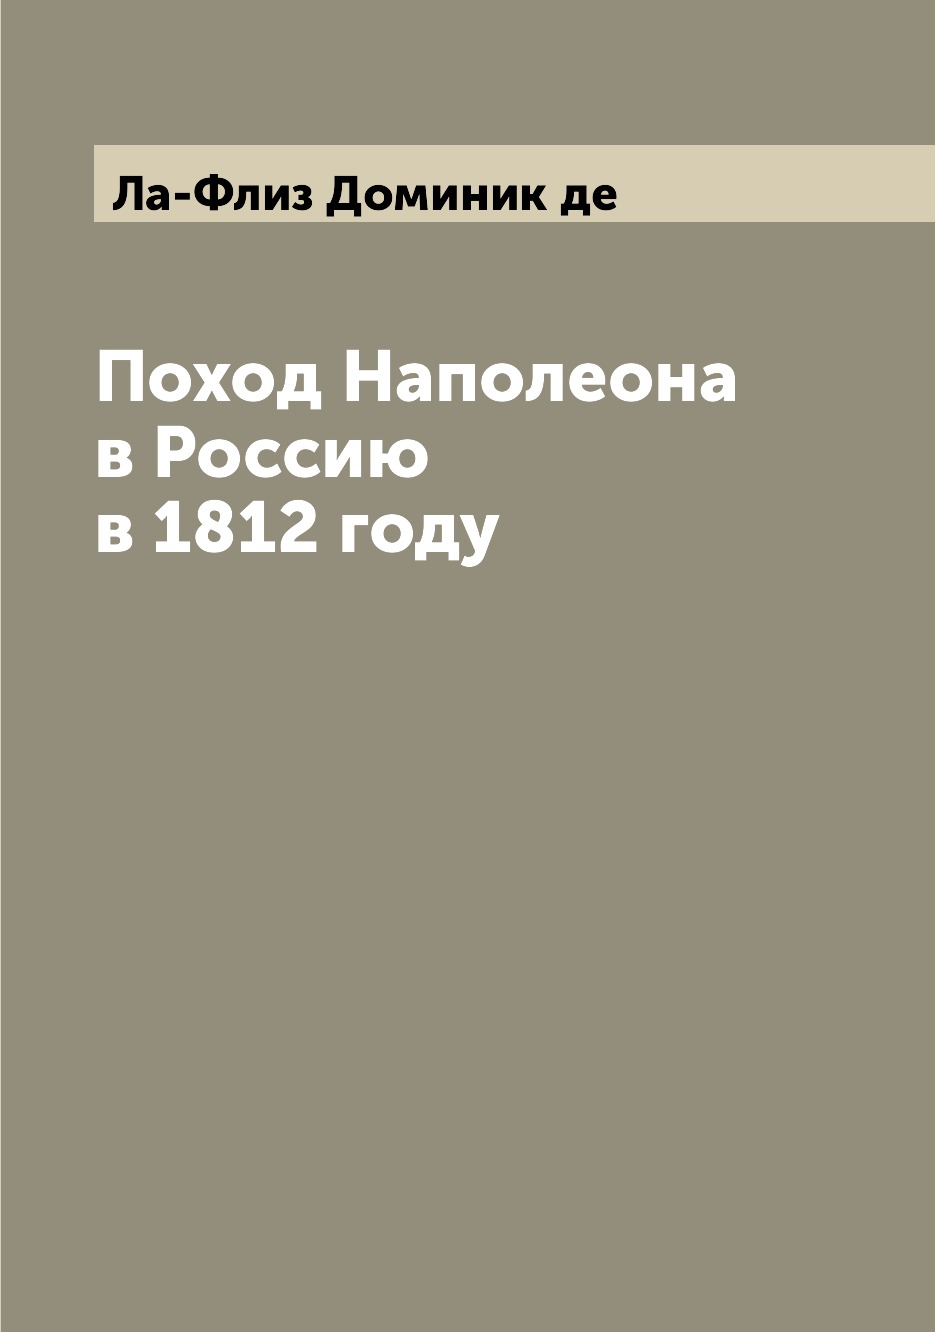 фото Книга поход наполеона в россию в 1812 году archive publica